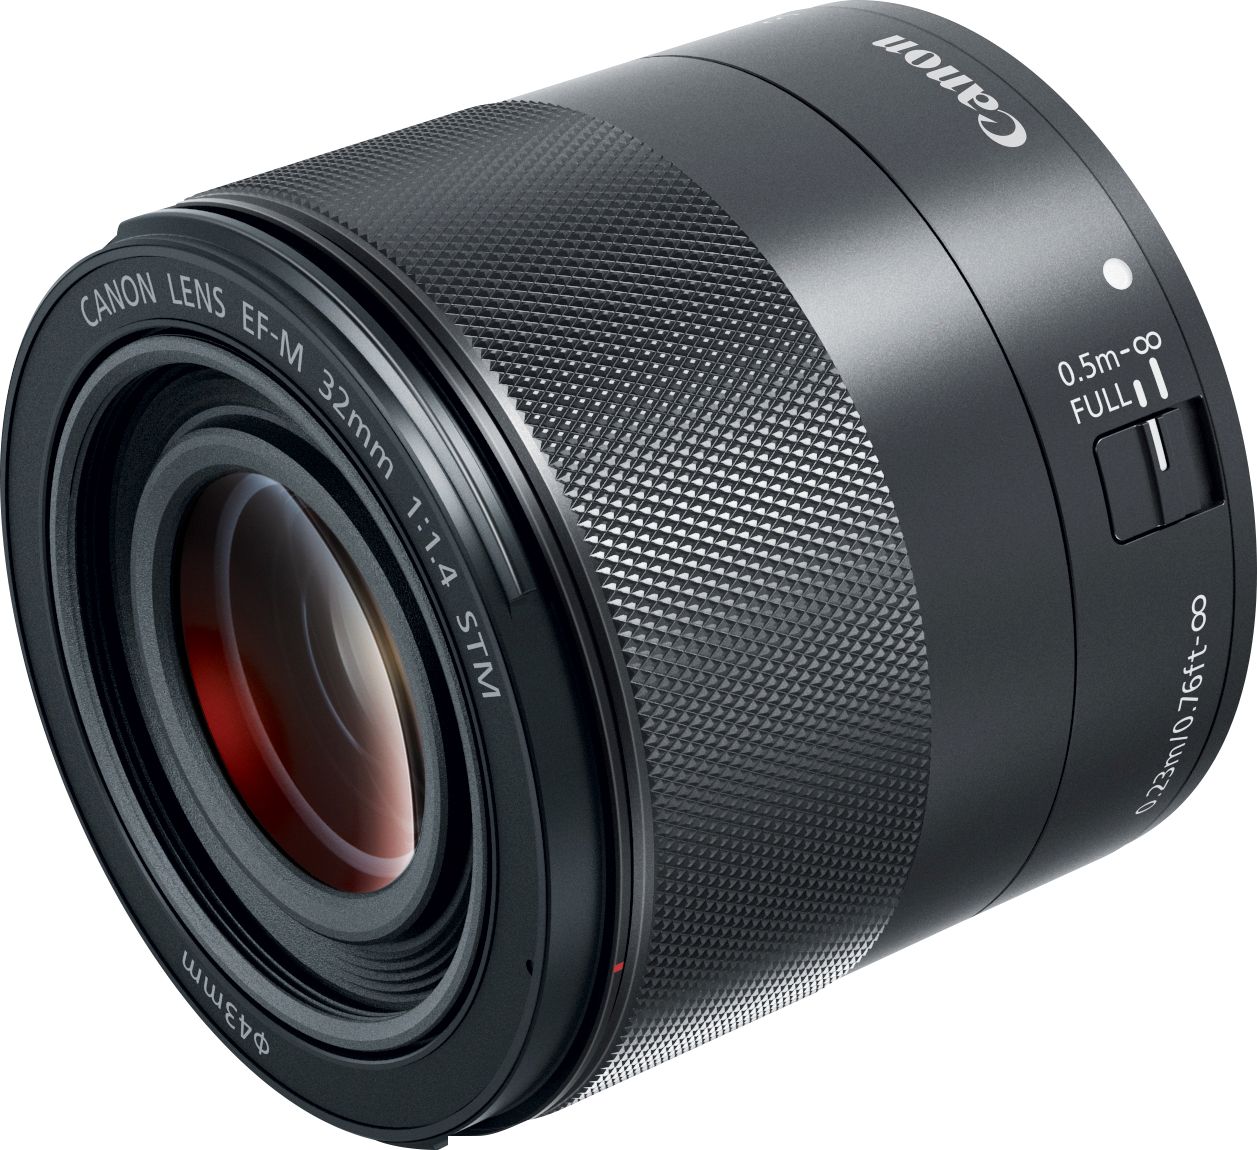 Canon EF-M32mm F1.4 STM Standard Prime Lens for EOS M Cameras Black  2439C002 - Best Buy